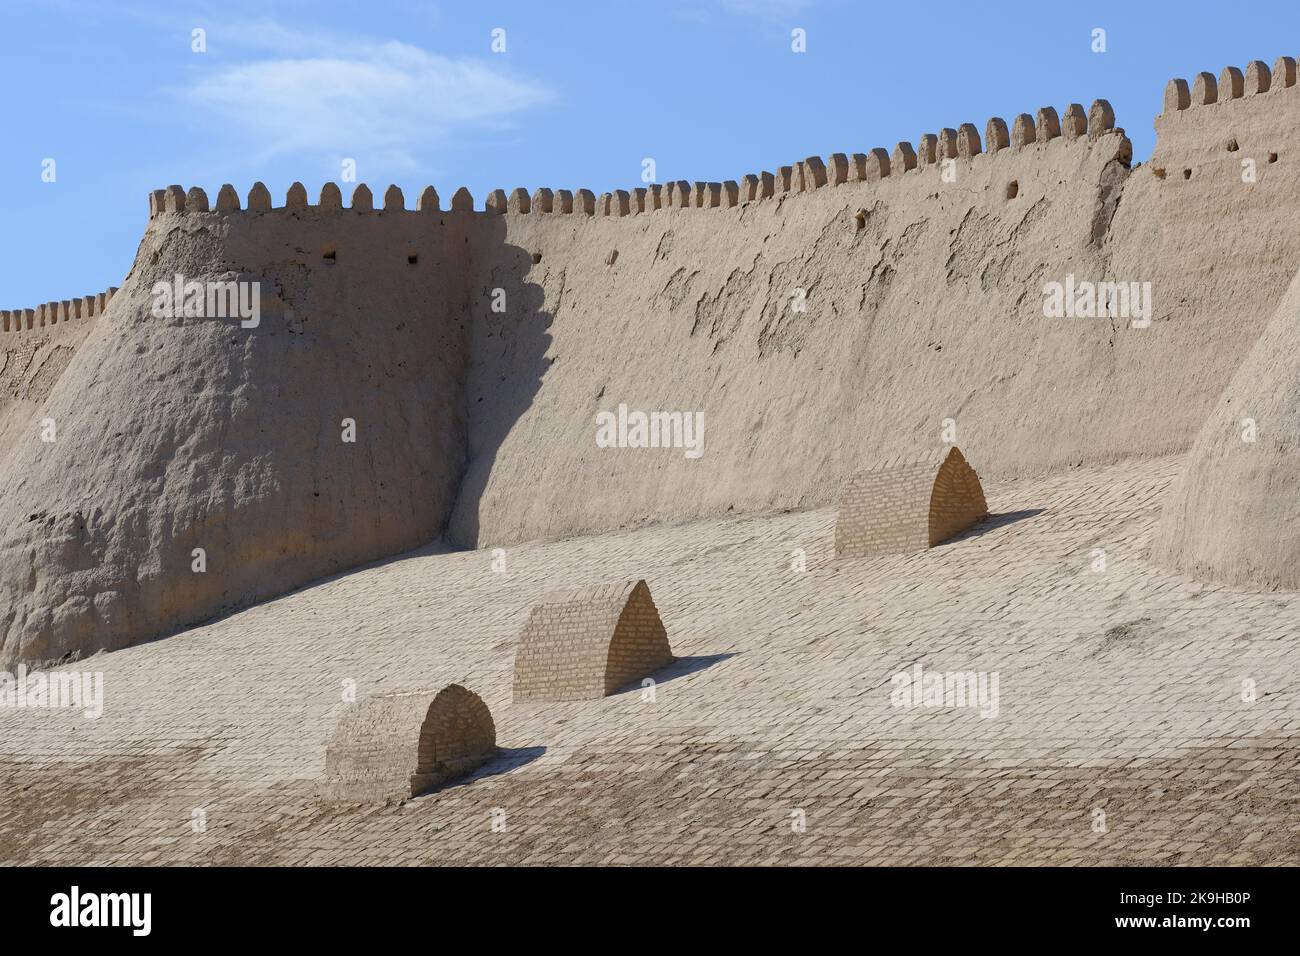 Khiva Ouzbékistan les anciens murs de boue de la ville fortifiée d'Inchon Qala, site classé au patrimoine mondial de l'UNESCO en août 2022 Banque D'Images